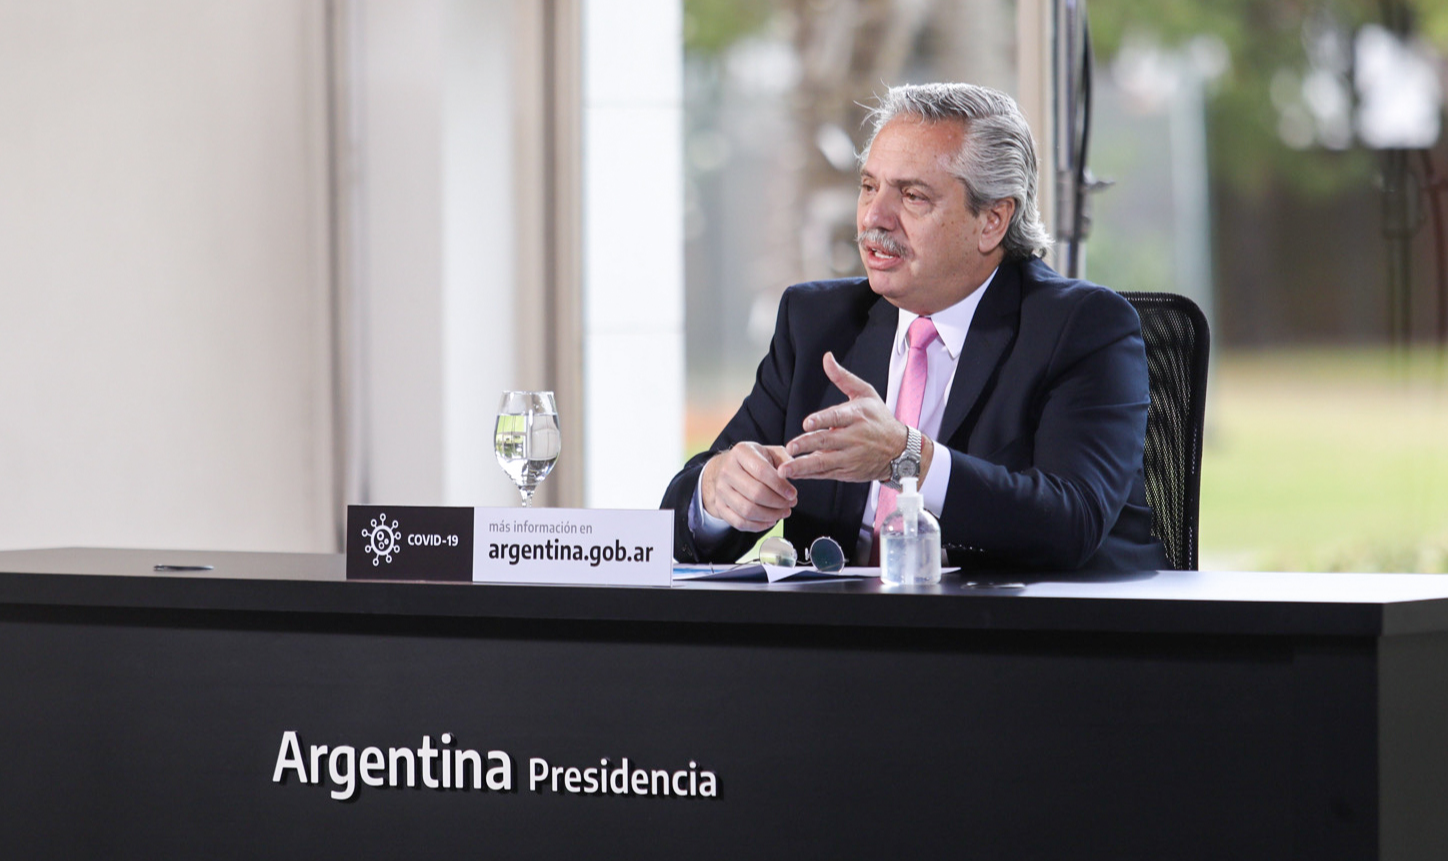 Em carta, presidente argentino prestou solidariedade a brasileiro e desejou pronta recuperação